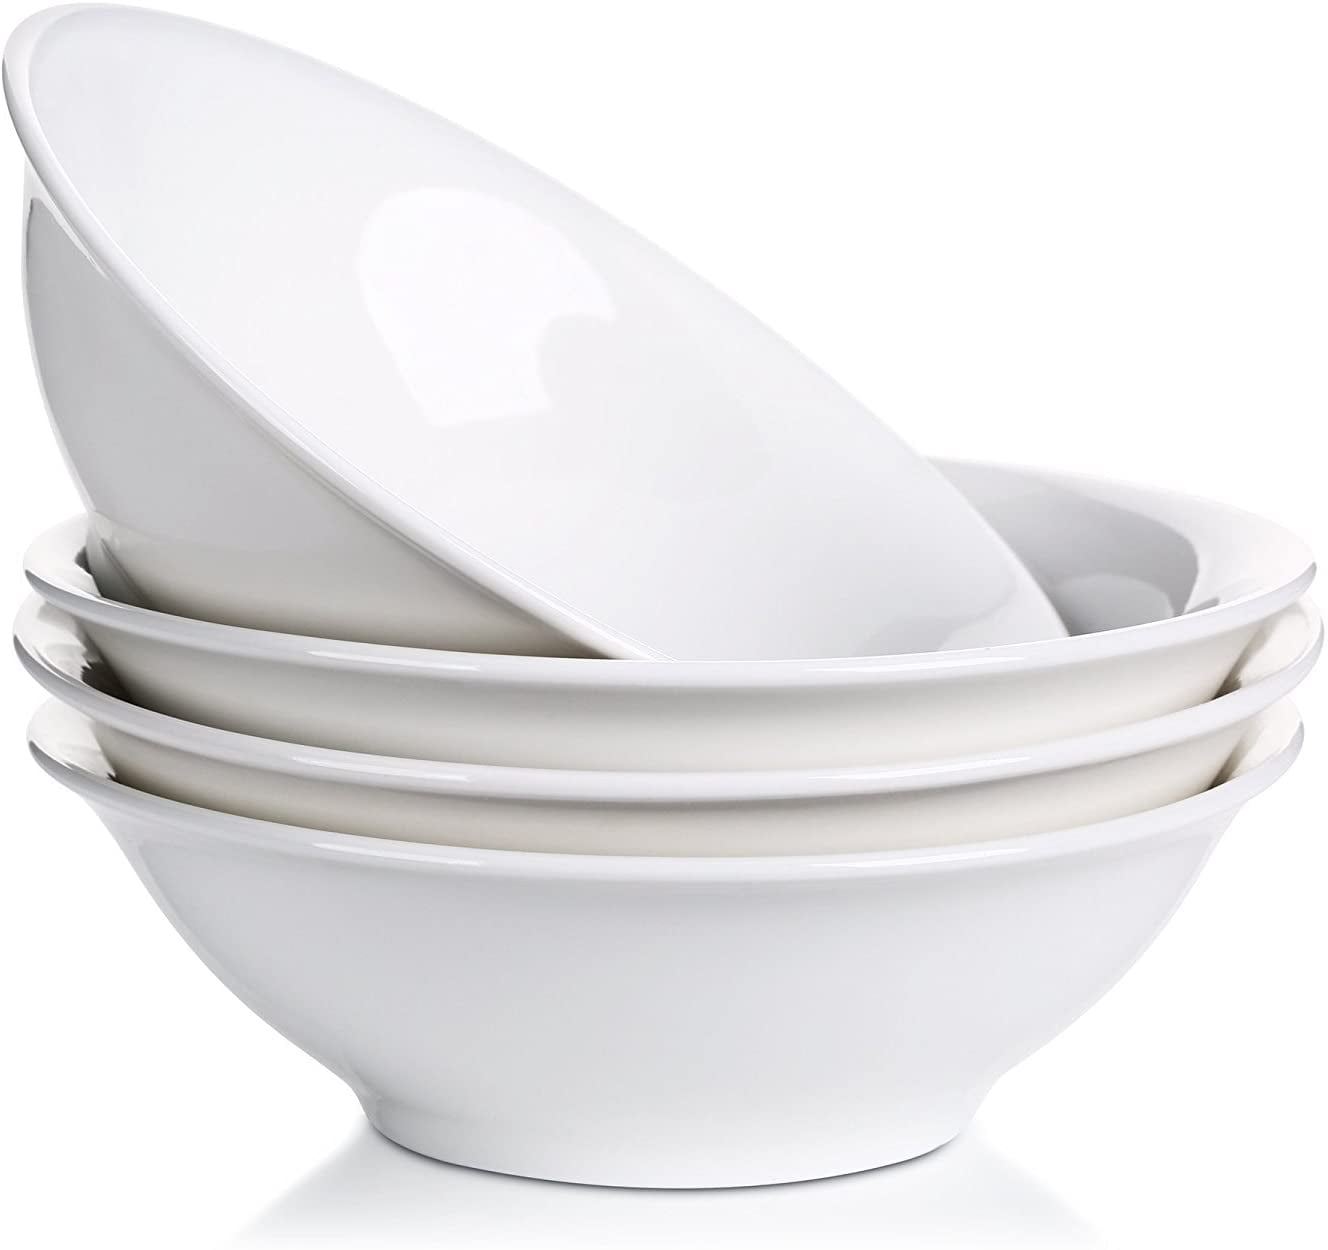  GlowSol 42 OZ Soup Bowls Set of 4, White Ceramic Bowls